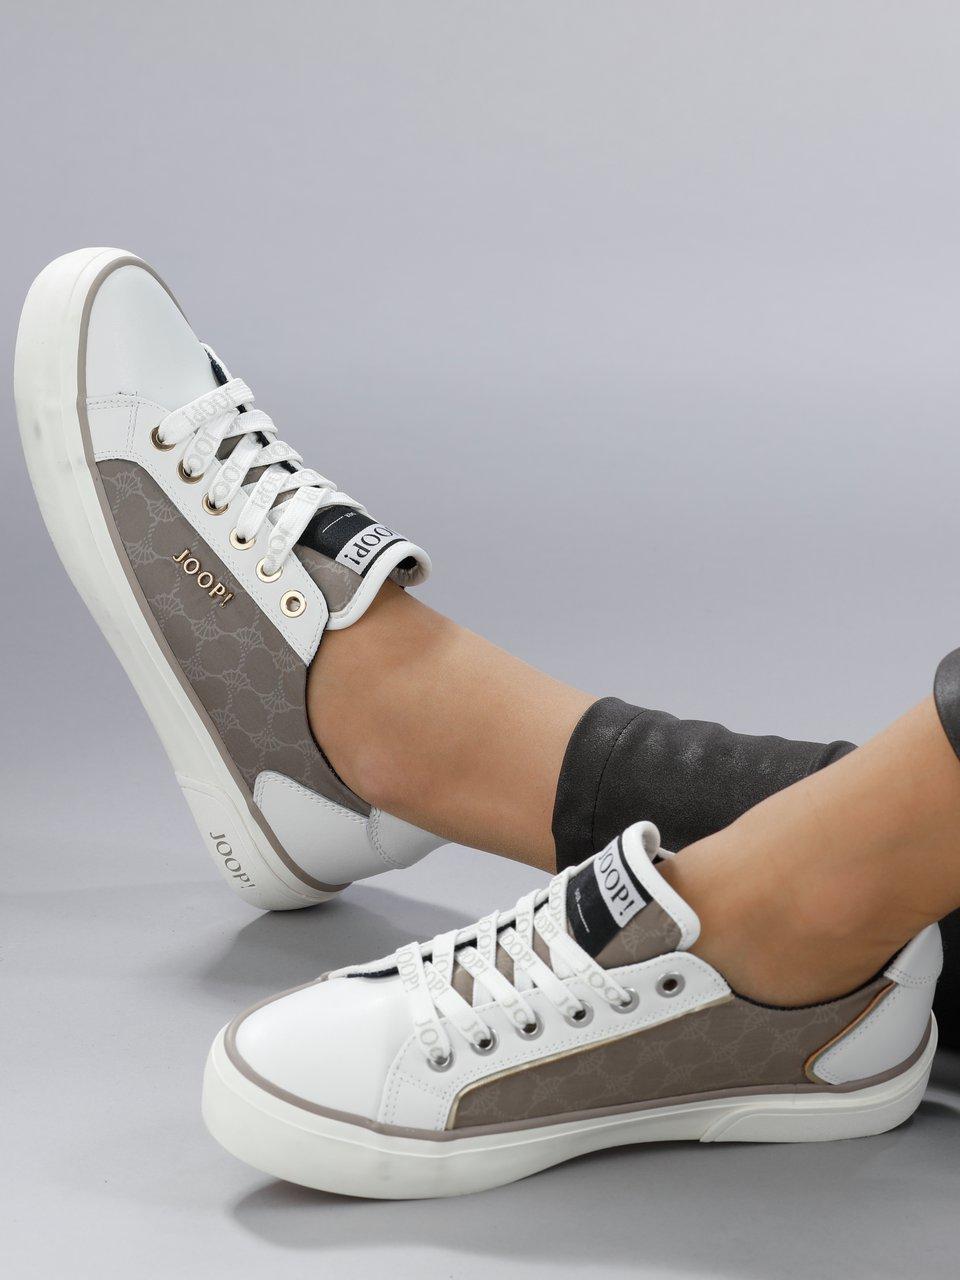 Joop! - Les sneakers modèle Tessuto Ice en cuir nappa